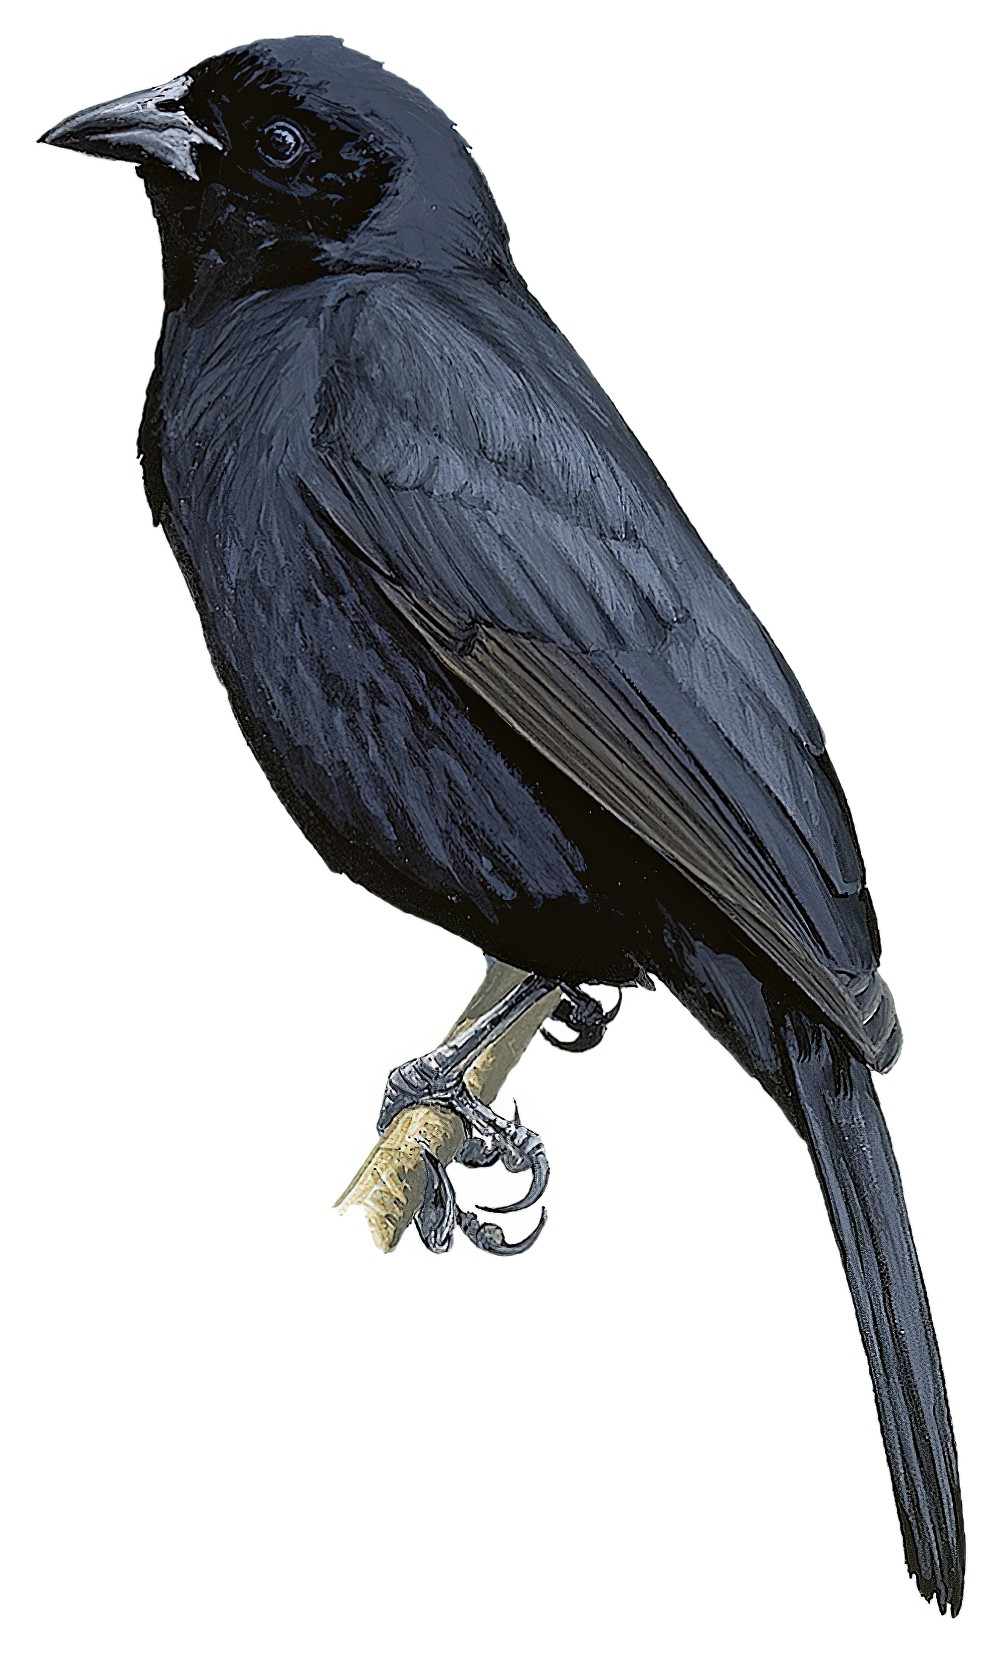 Bolivian Blackbird / Oreopsar bolivianus